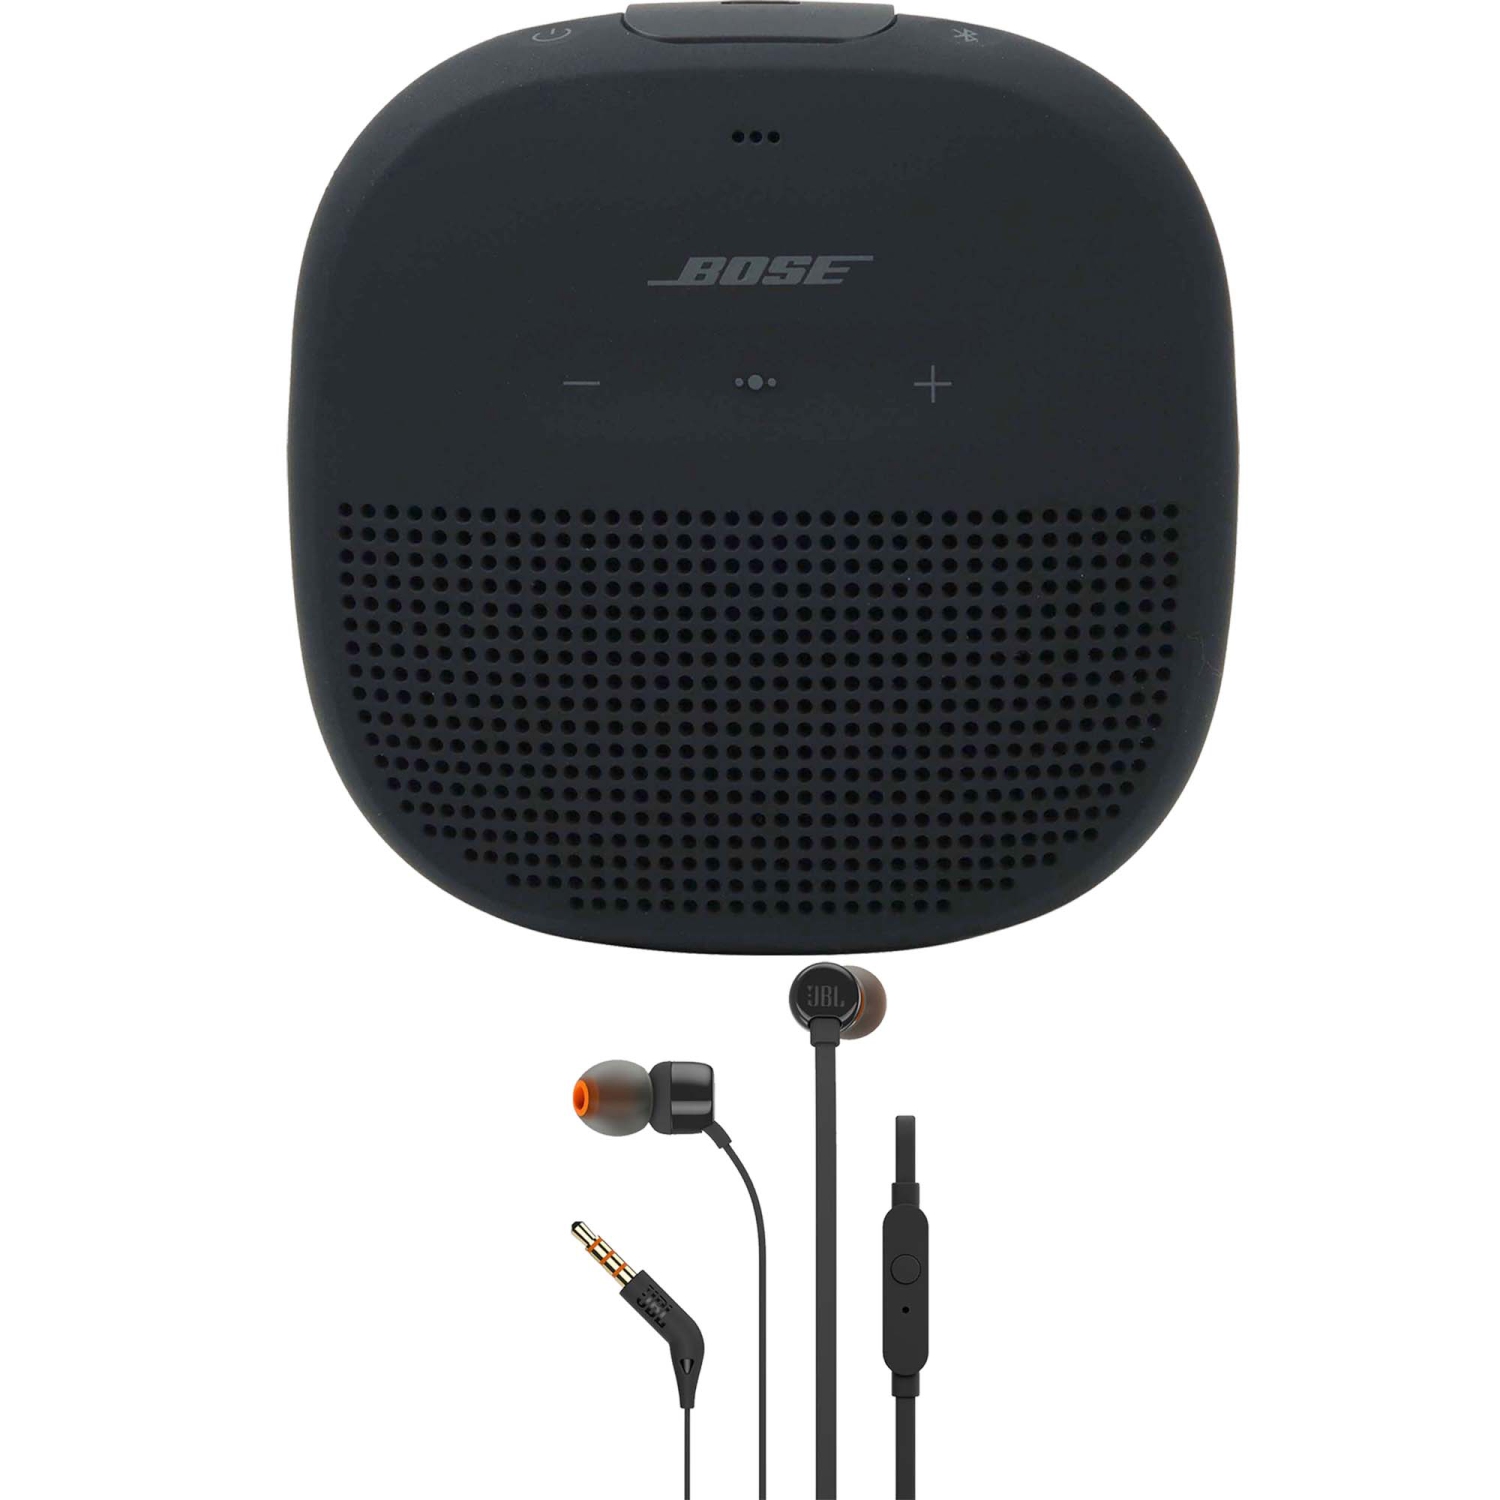 Bose Soundlink Micro Bluetooth Speaker Black + JBL T110 in Ear Headphones Black